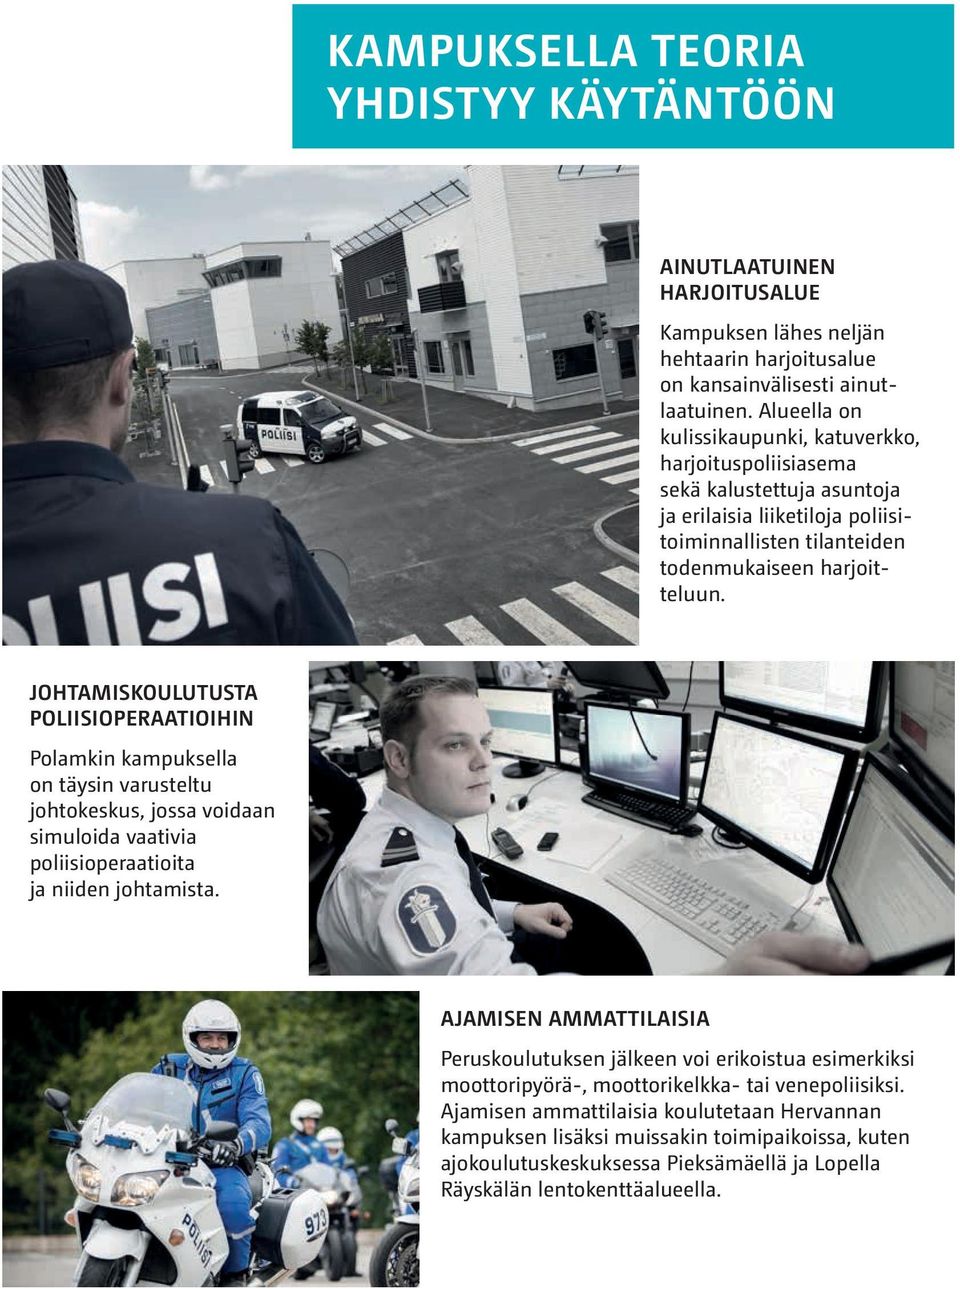 JOHTAMISKOULUTUSTA POLIISIOPERAATIOIHIN Polamkin kampuksella on täysin varusteltu johtokeskus, jossa voidaan simuloida vaativia poliisioperaatioita ja niiden johtamista.